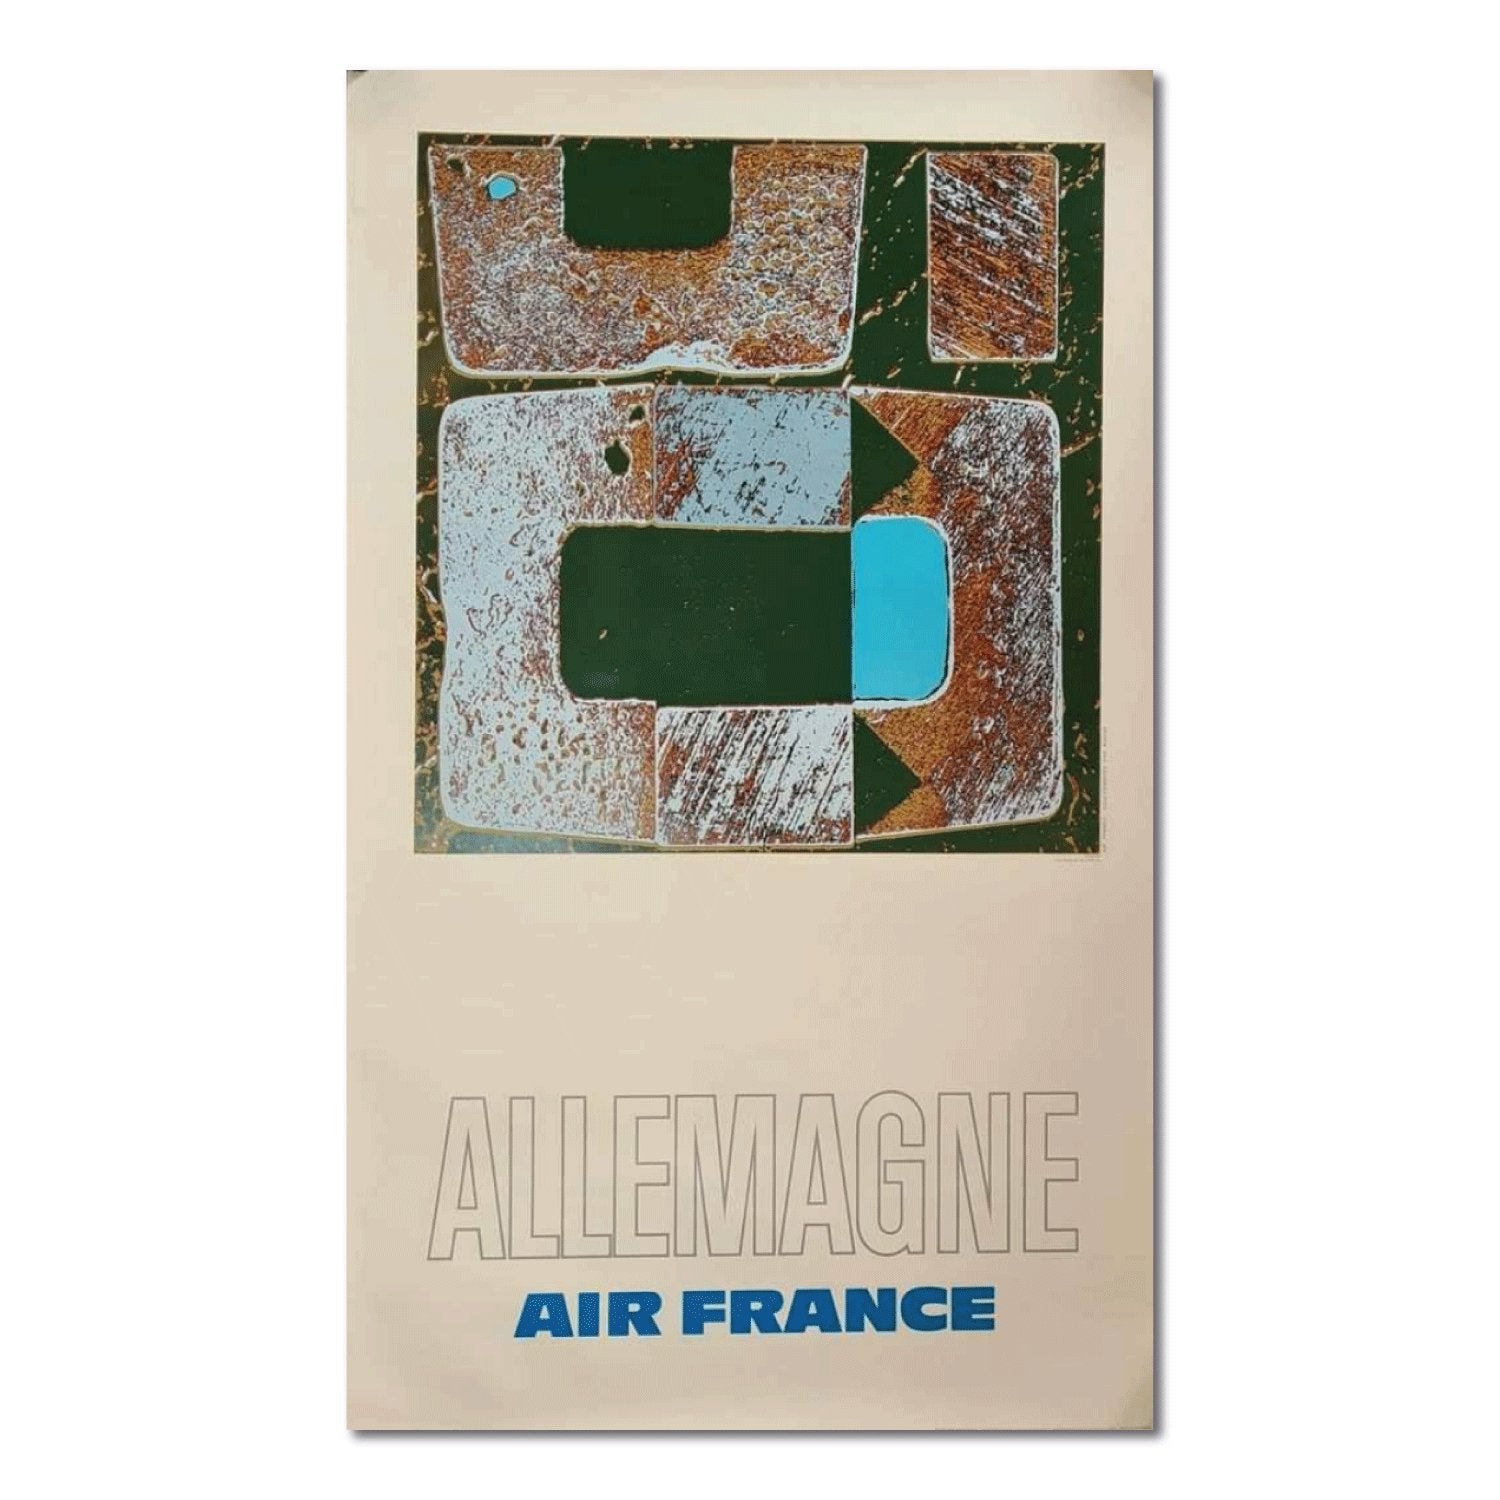 Air France Allemagne - Affiche ancienne de Ramond Pages 1971 - Studio Monet